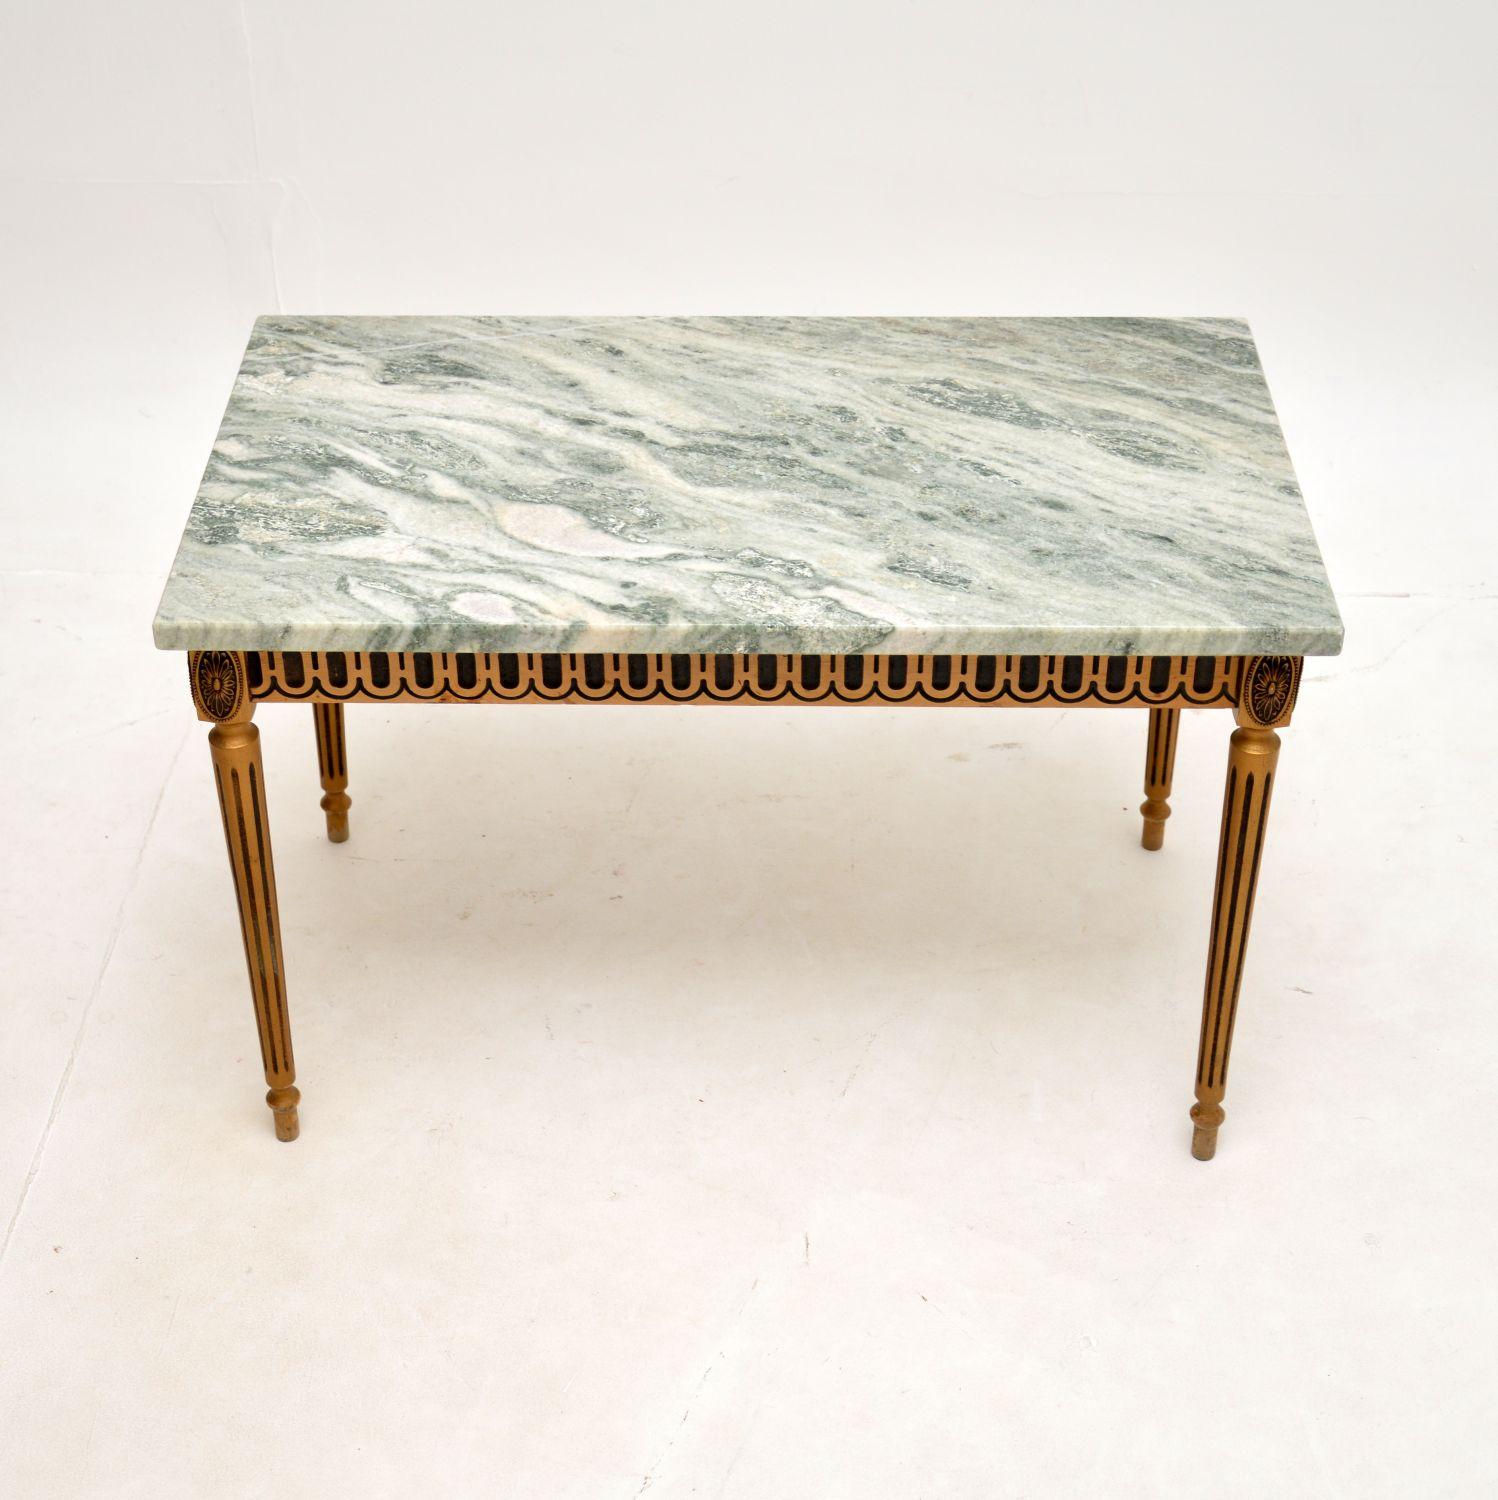 Magnifique petite table basse ancienne en bois doré avec plateau en marbre. Fabriqué en France, il date des années 1950.

Il est très bien fait, avec un cadre solide en bois doré et un magnifique plateau en marbre qui se soulève et se replace sur la